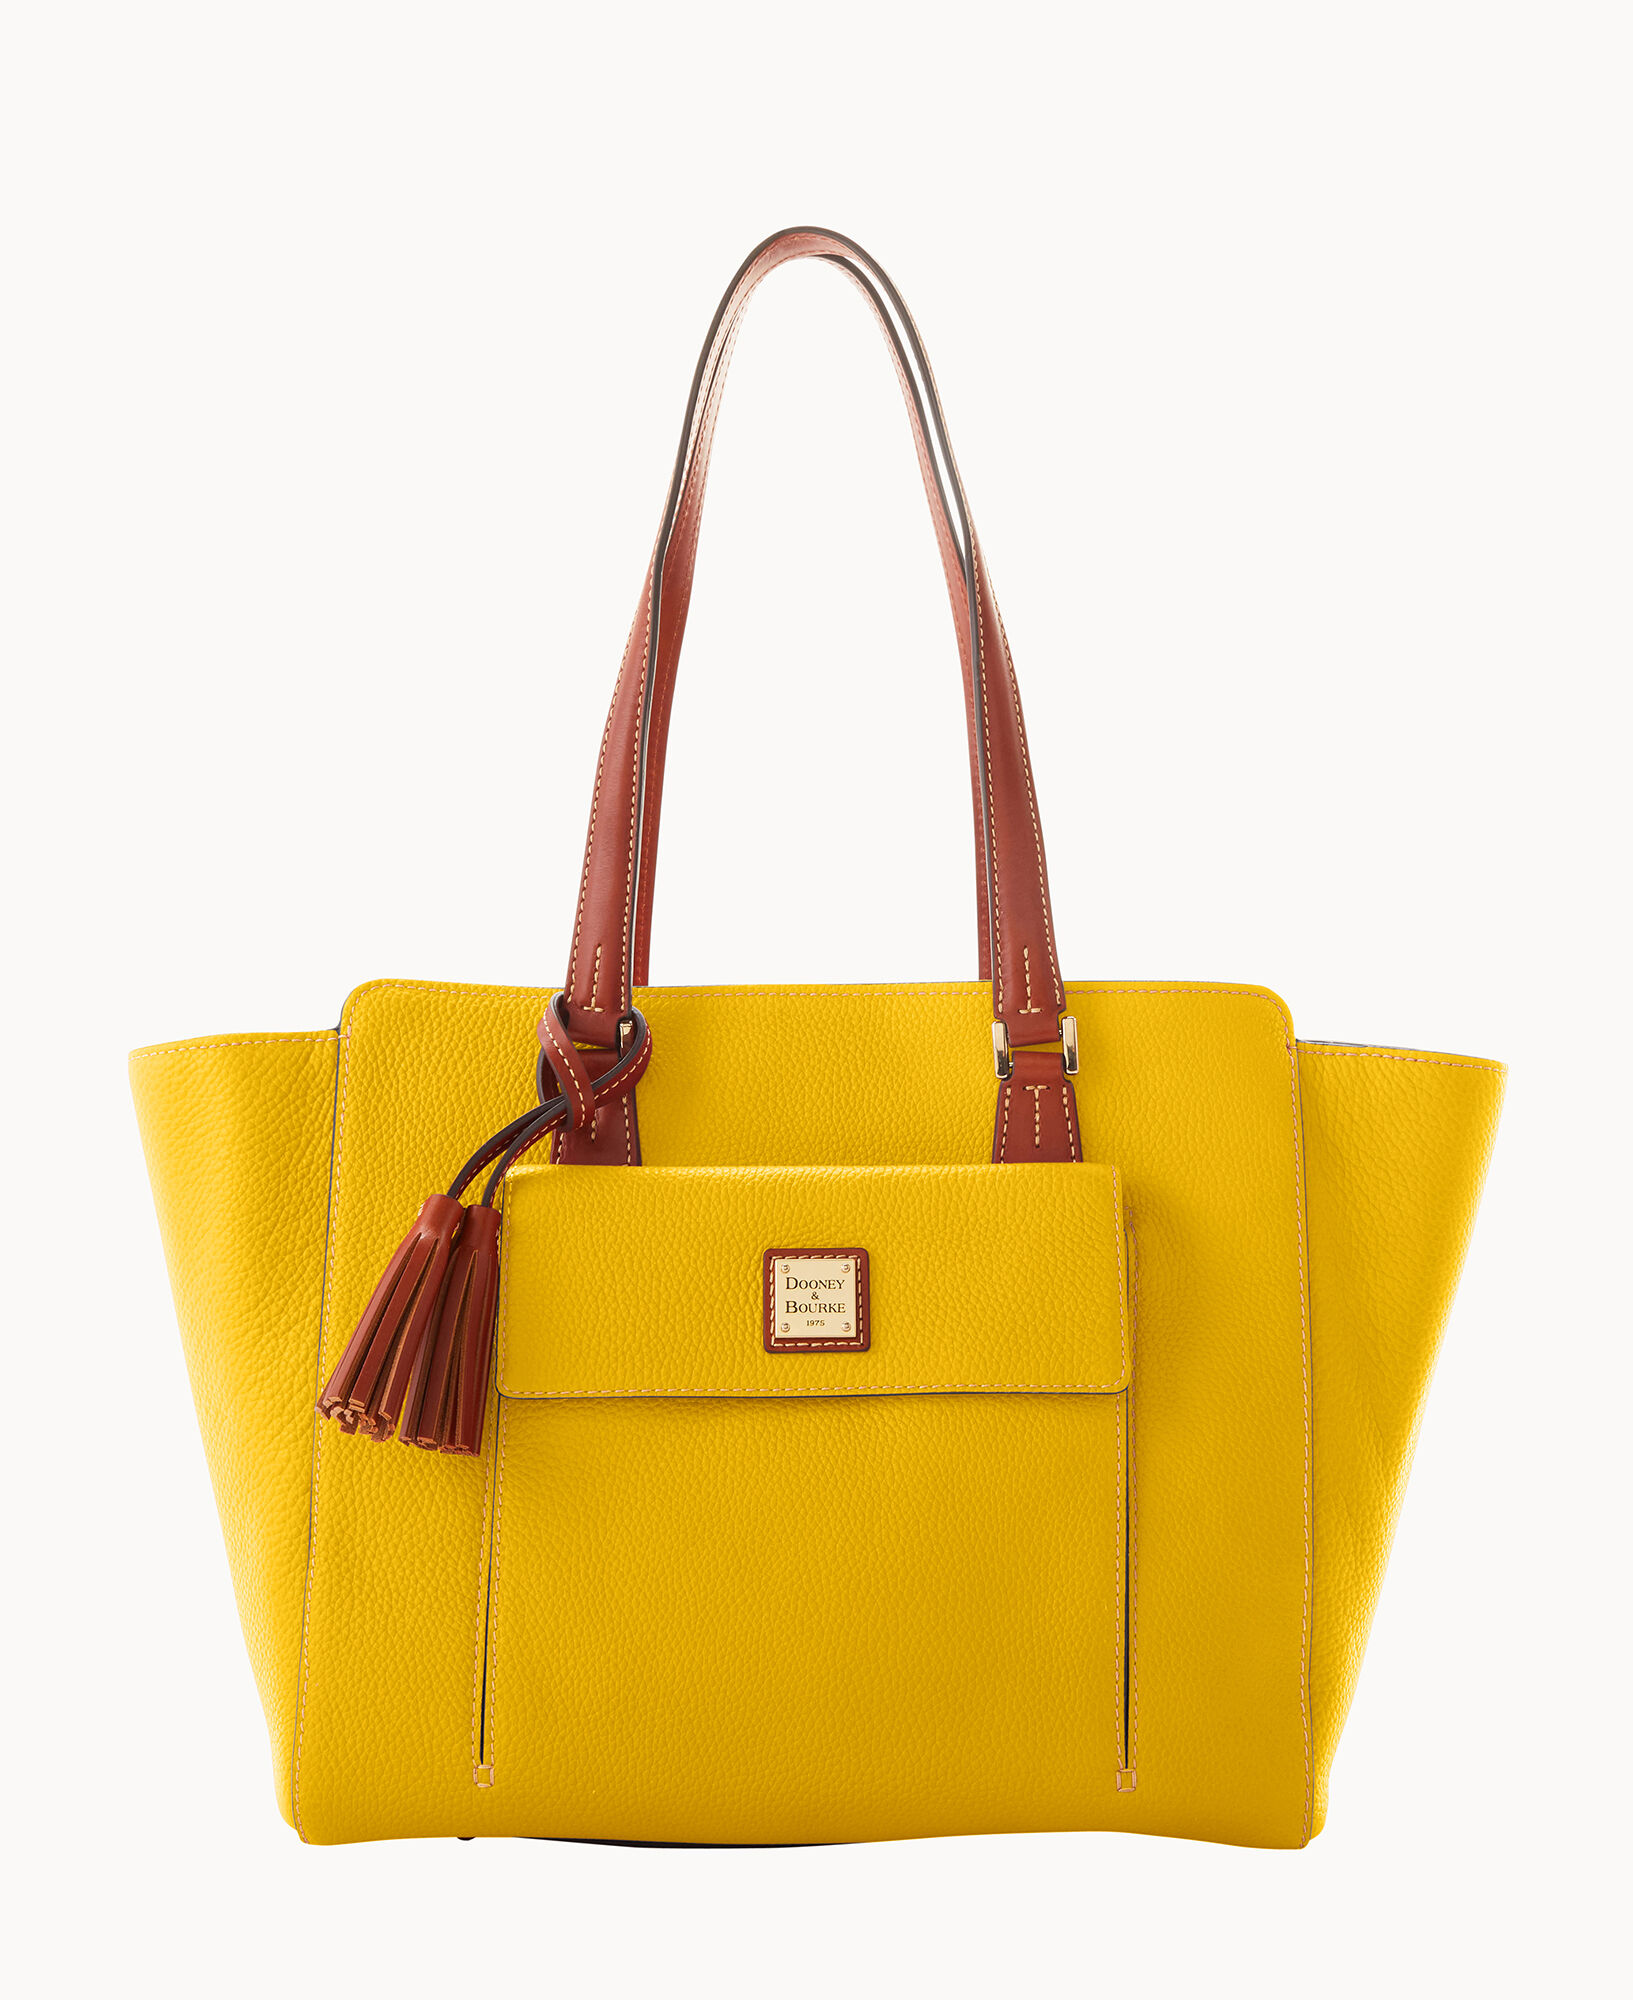 Dooney & Bourke Women's Bag - Yellow